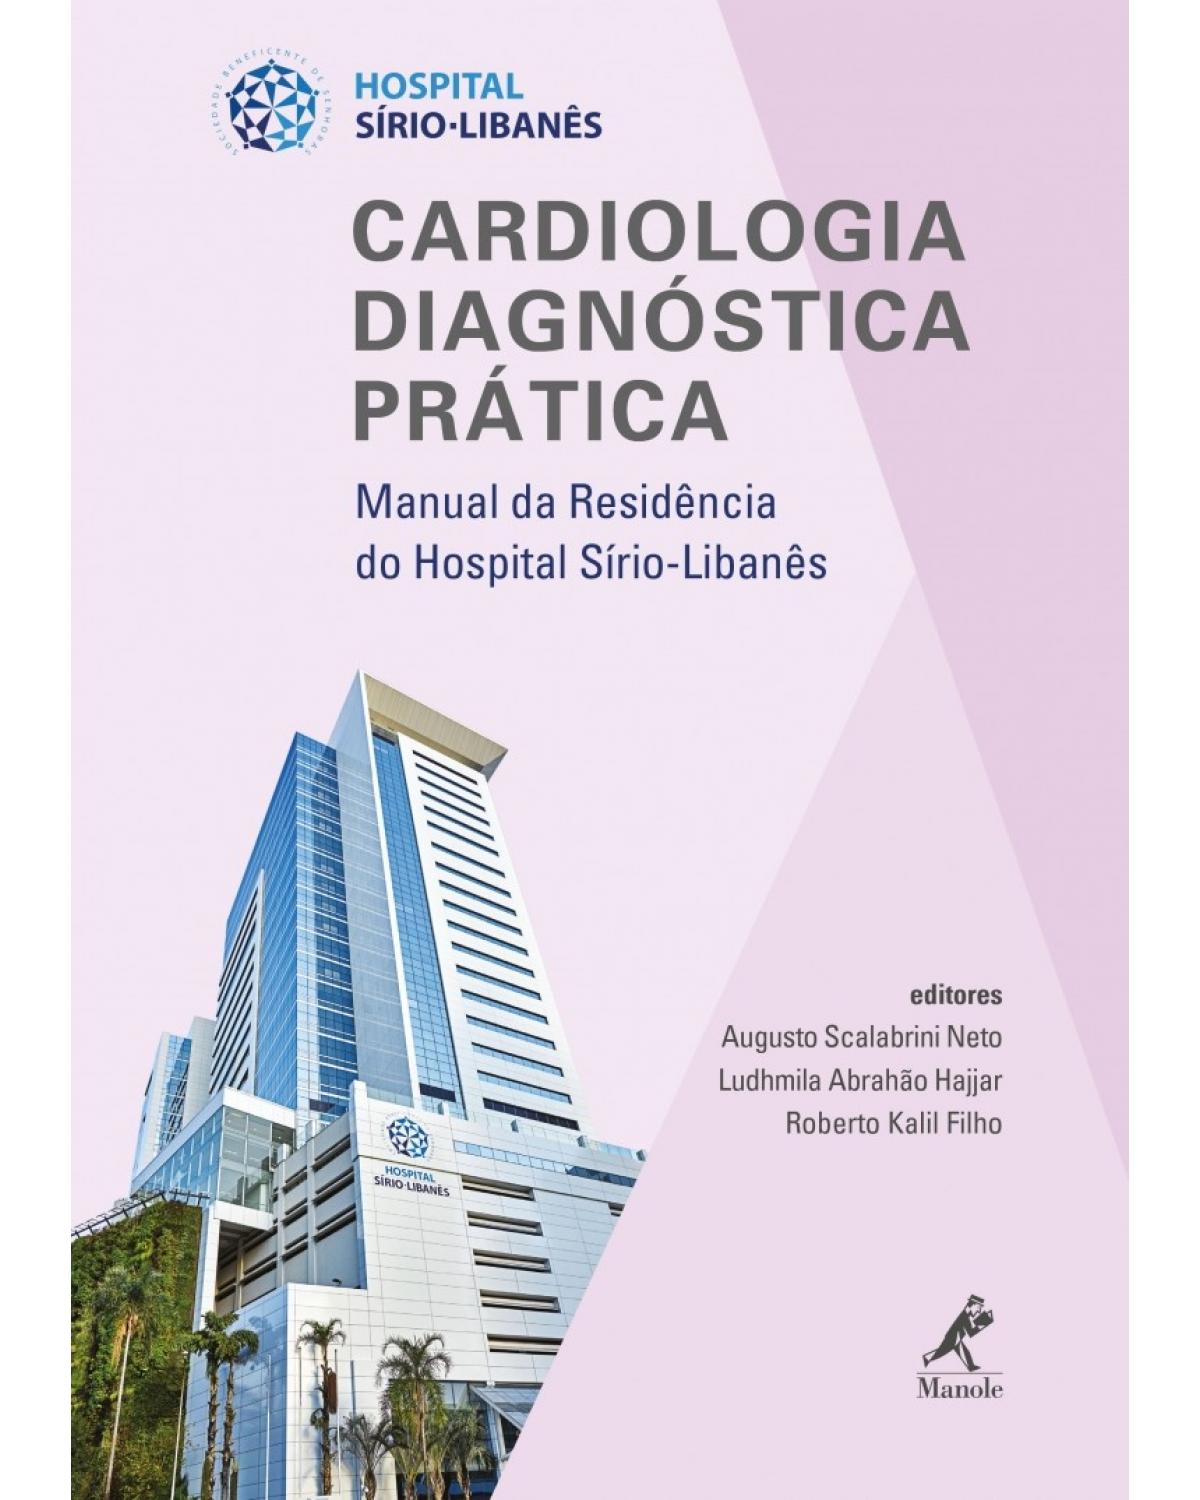 Cardiologia diagnóstica prática - Volume 2: Manual da residência do Hospital Sírio-Libanês - 1ª Edição | 2018